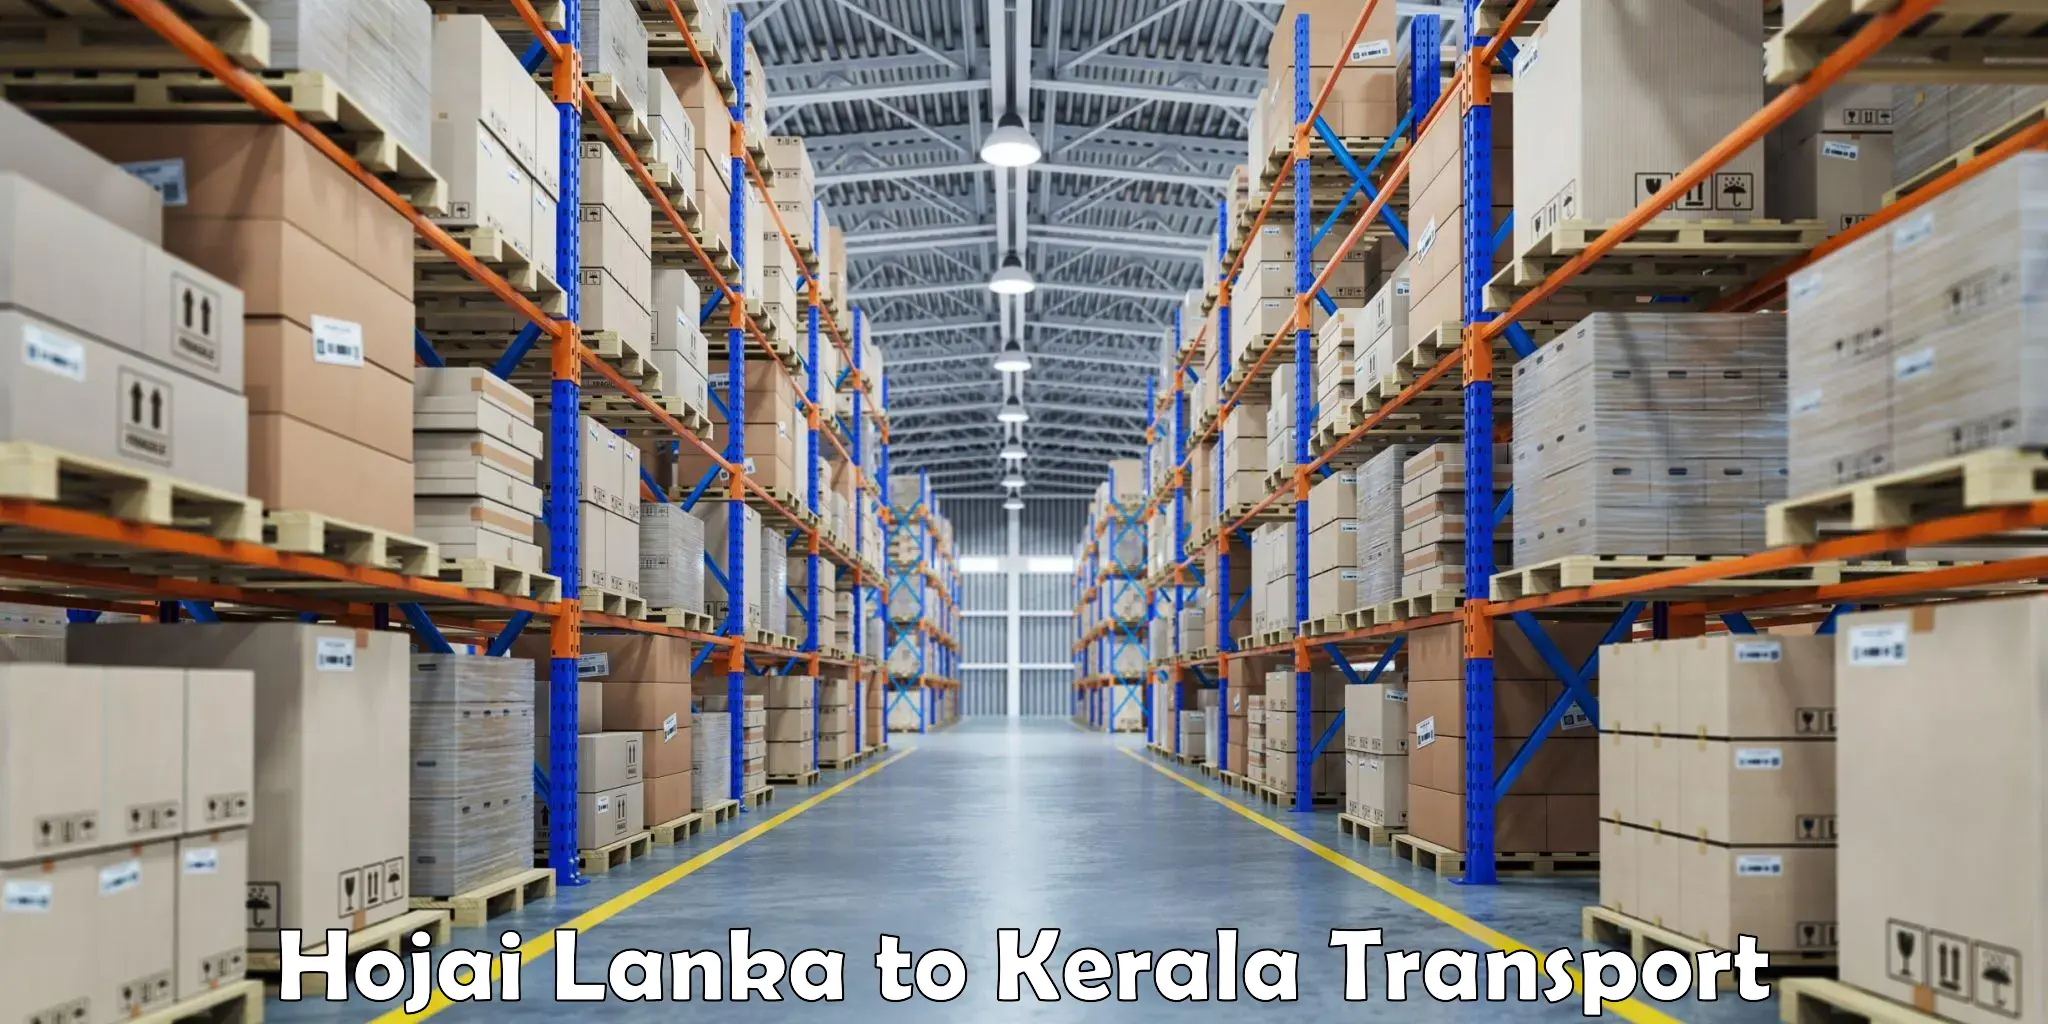 Shipping partner Hojai Lanka to Kerala